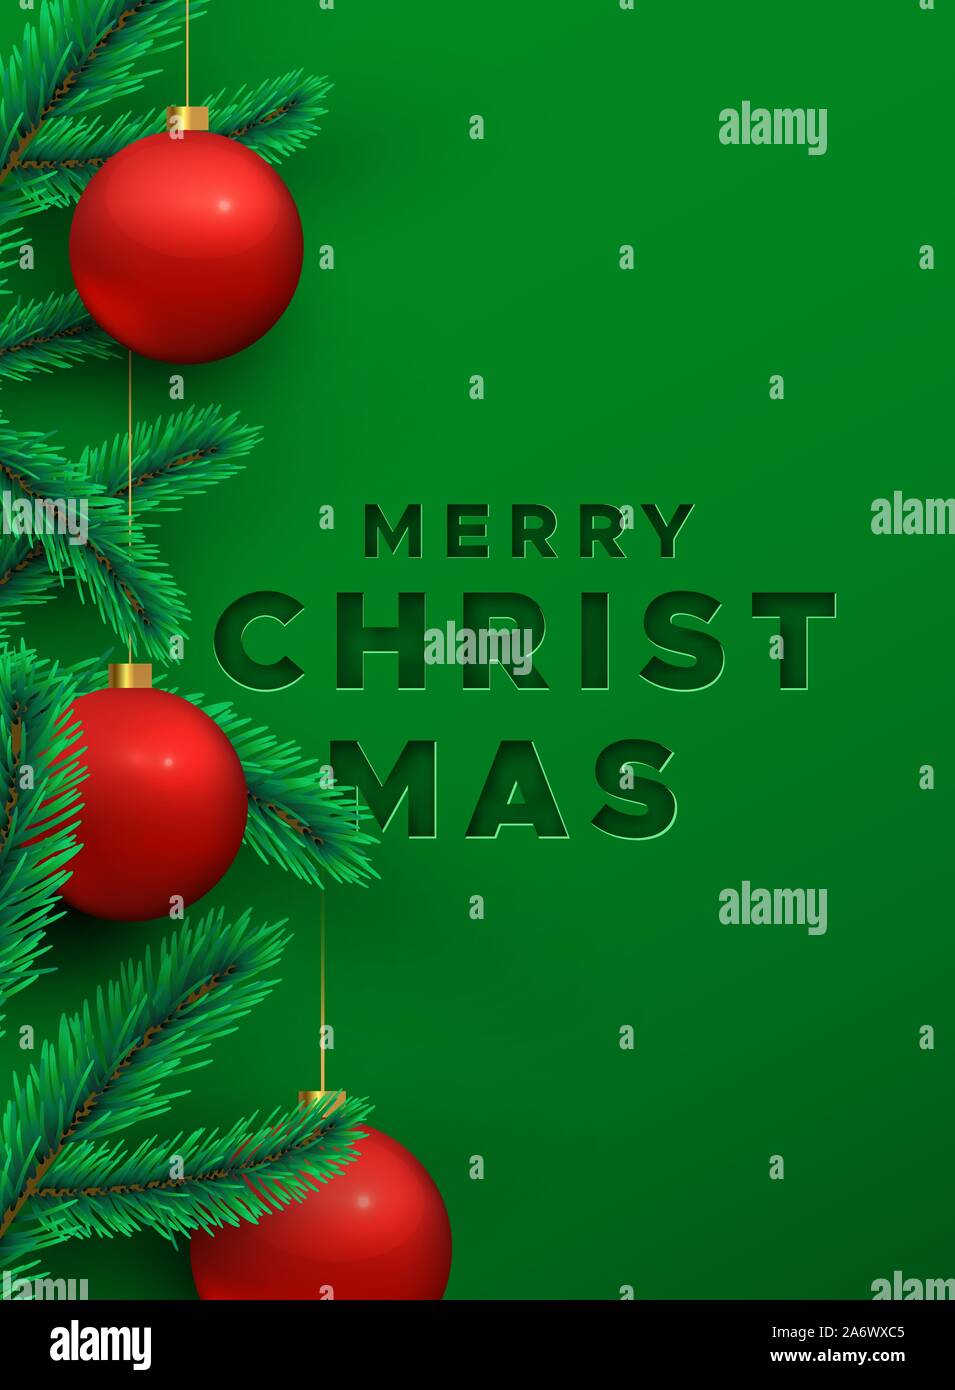 Merry Christmas greeting card illustrazione di festosa sfondo verde con della carta consente di tagliare il testo citazione, rosso ninnolo ornamento e 3d pino decorazione. Illustrazione Vettoriale